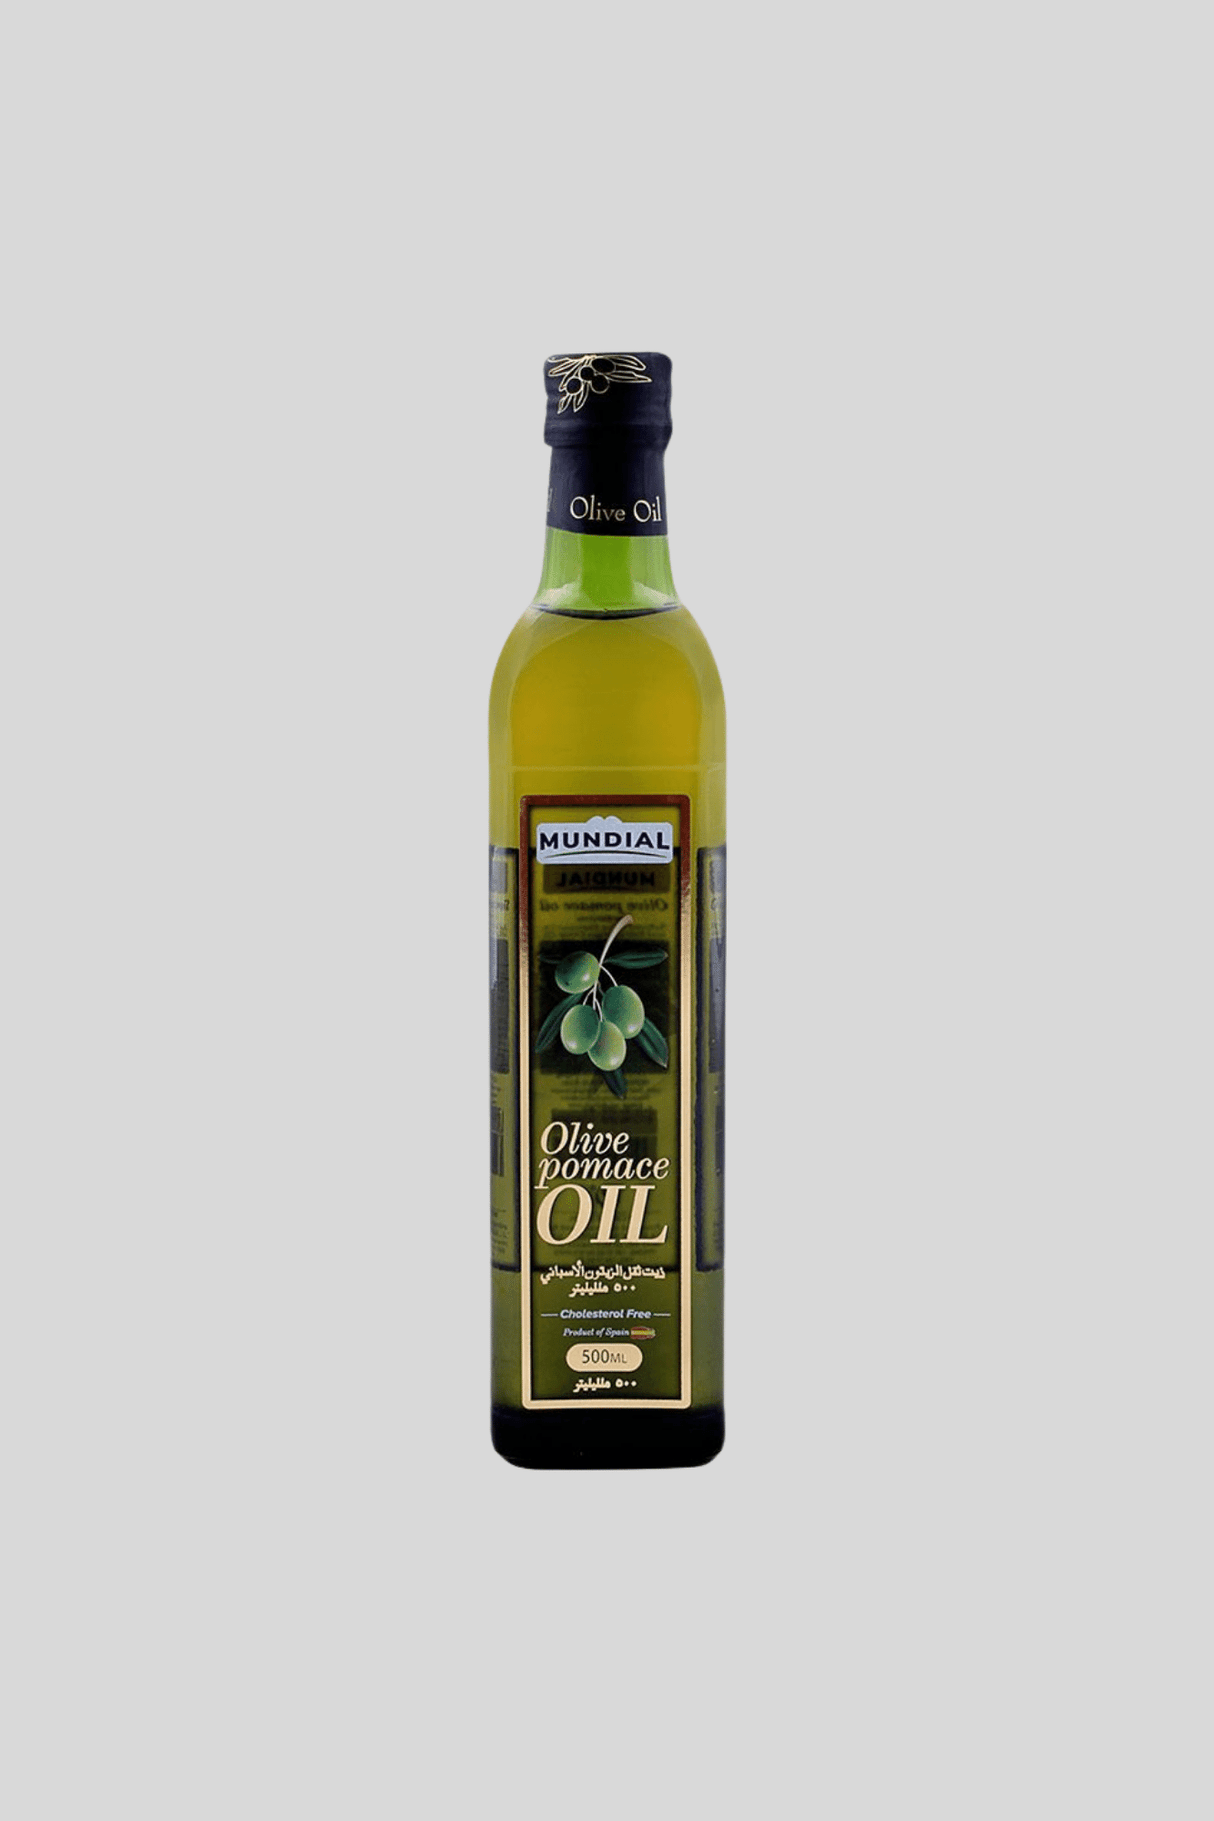 mundial olive oil pomace 500ml bottle